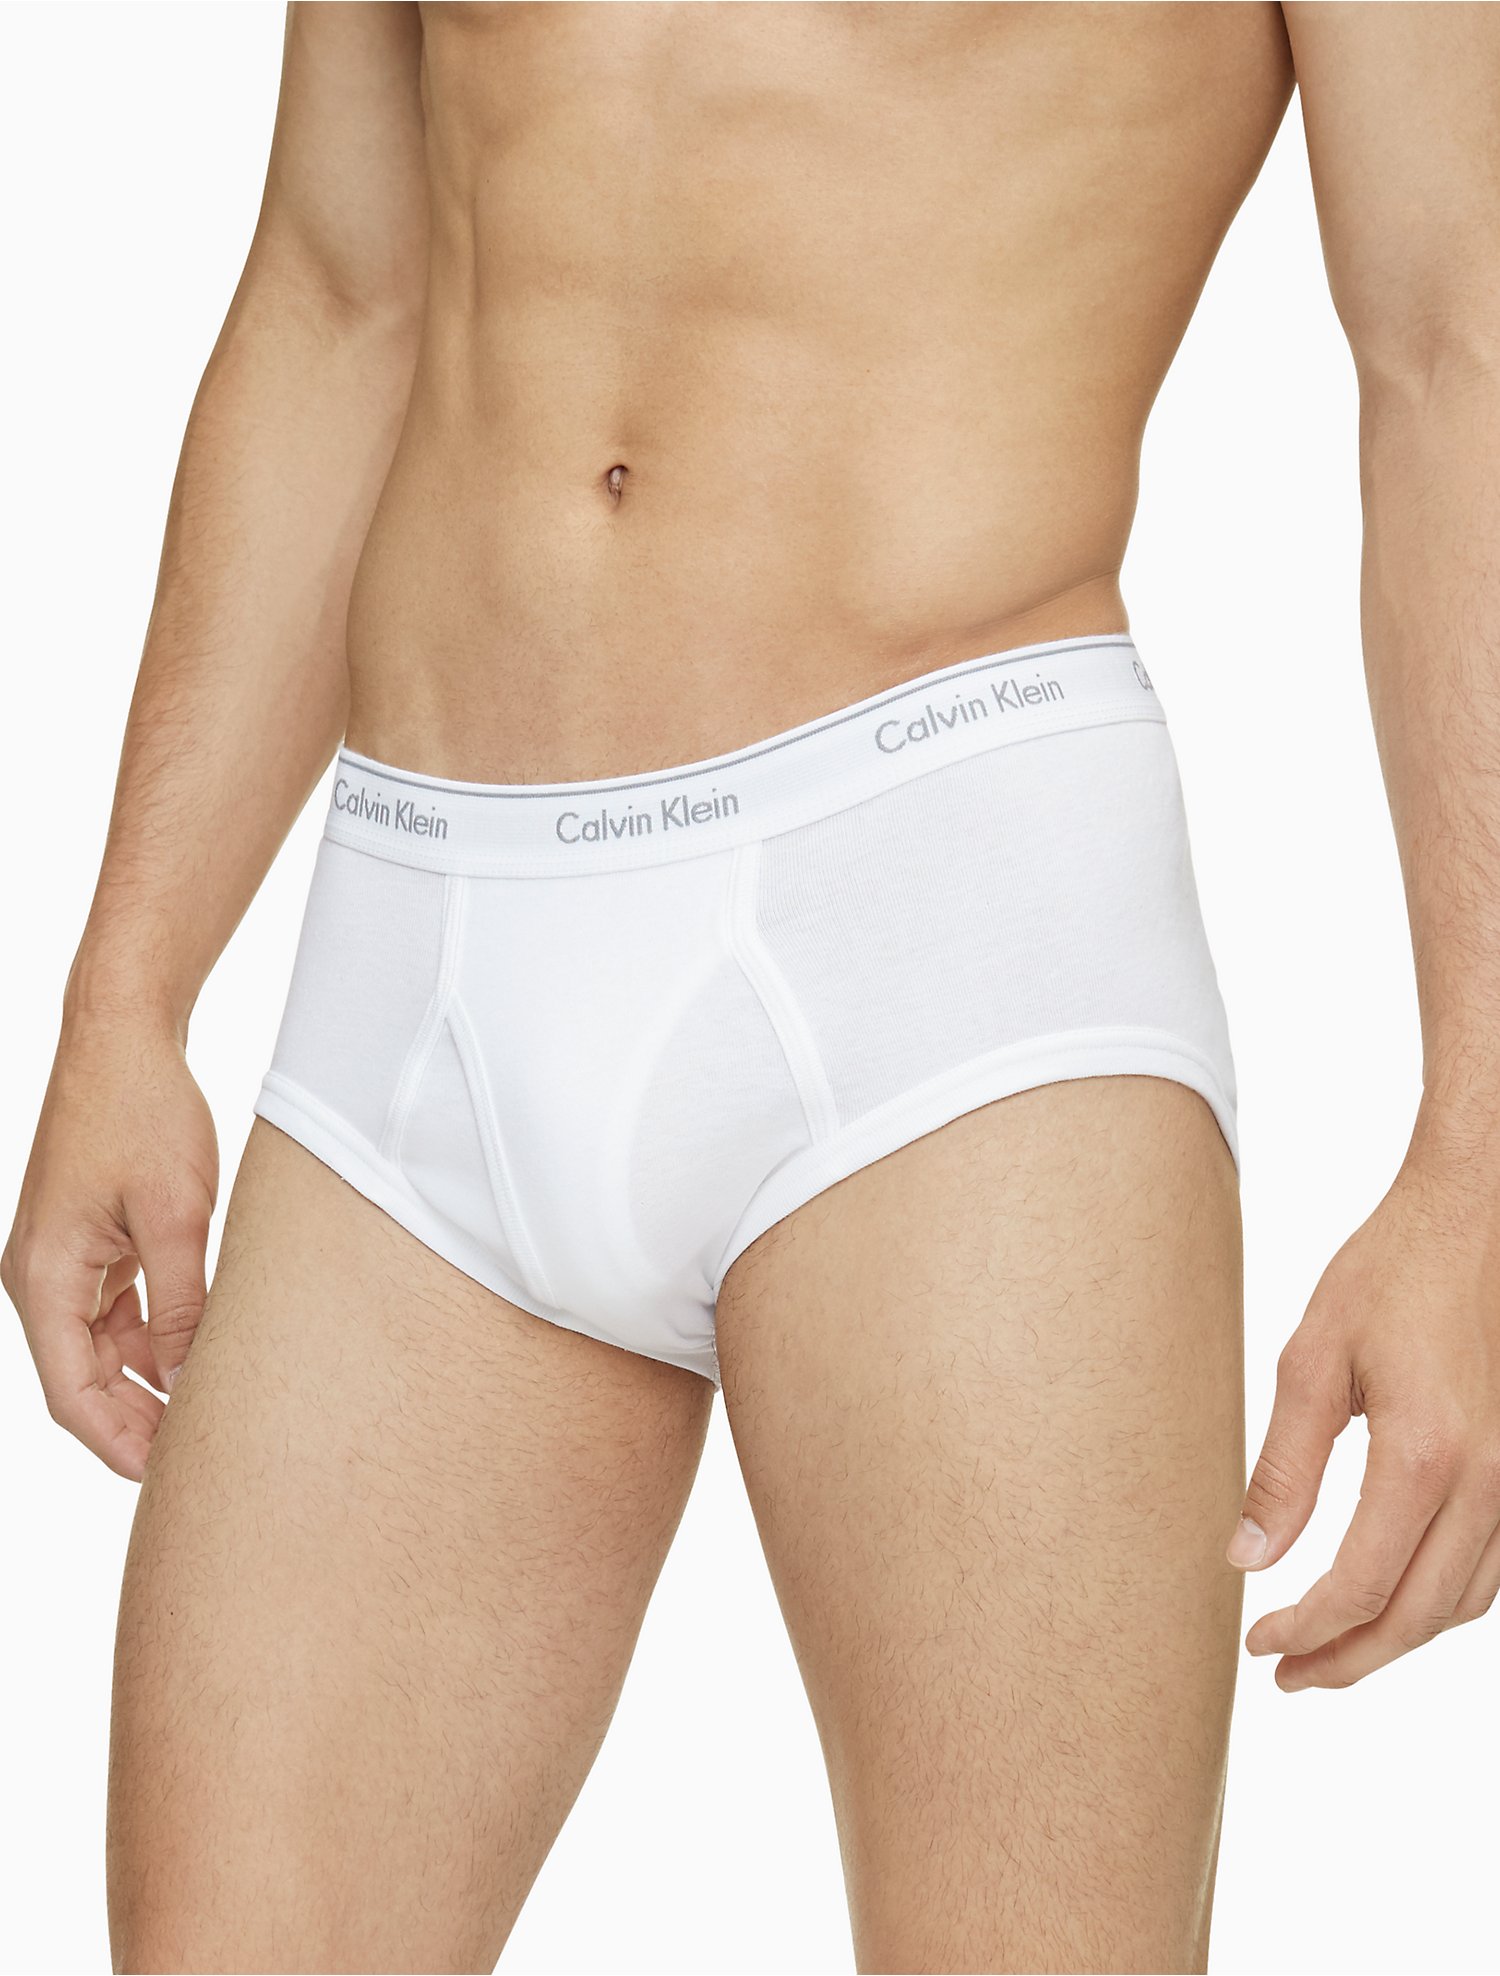 Introducir 67+ imagen 6 pack calvin klein underwear